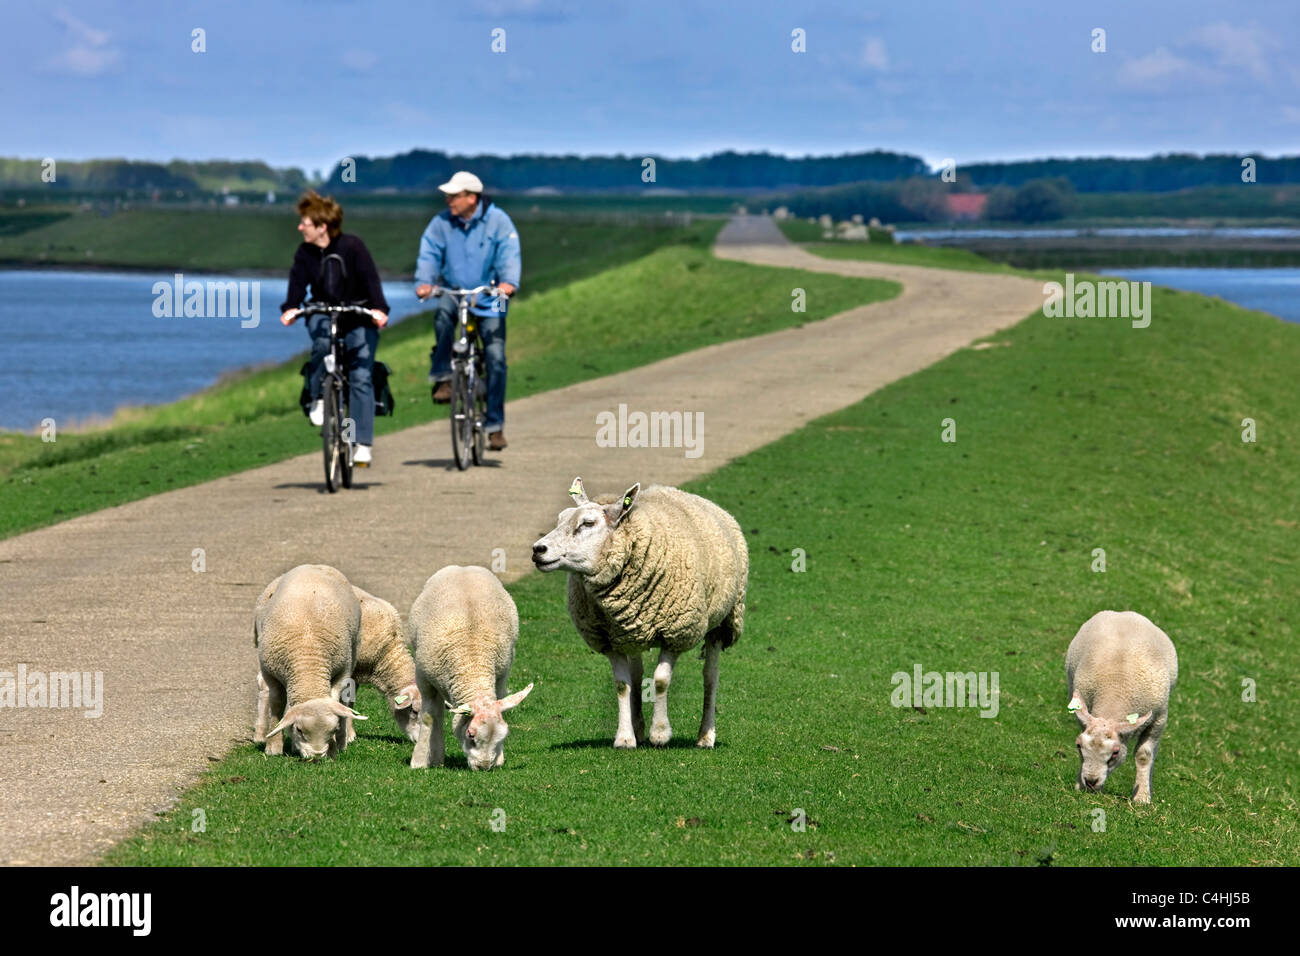 Schafe Schaf (Ovis Aries) mit Lämmern und zwei Radfahrer ihr Fahrrad am Deich, Niederlande Stockfoto